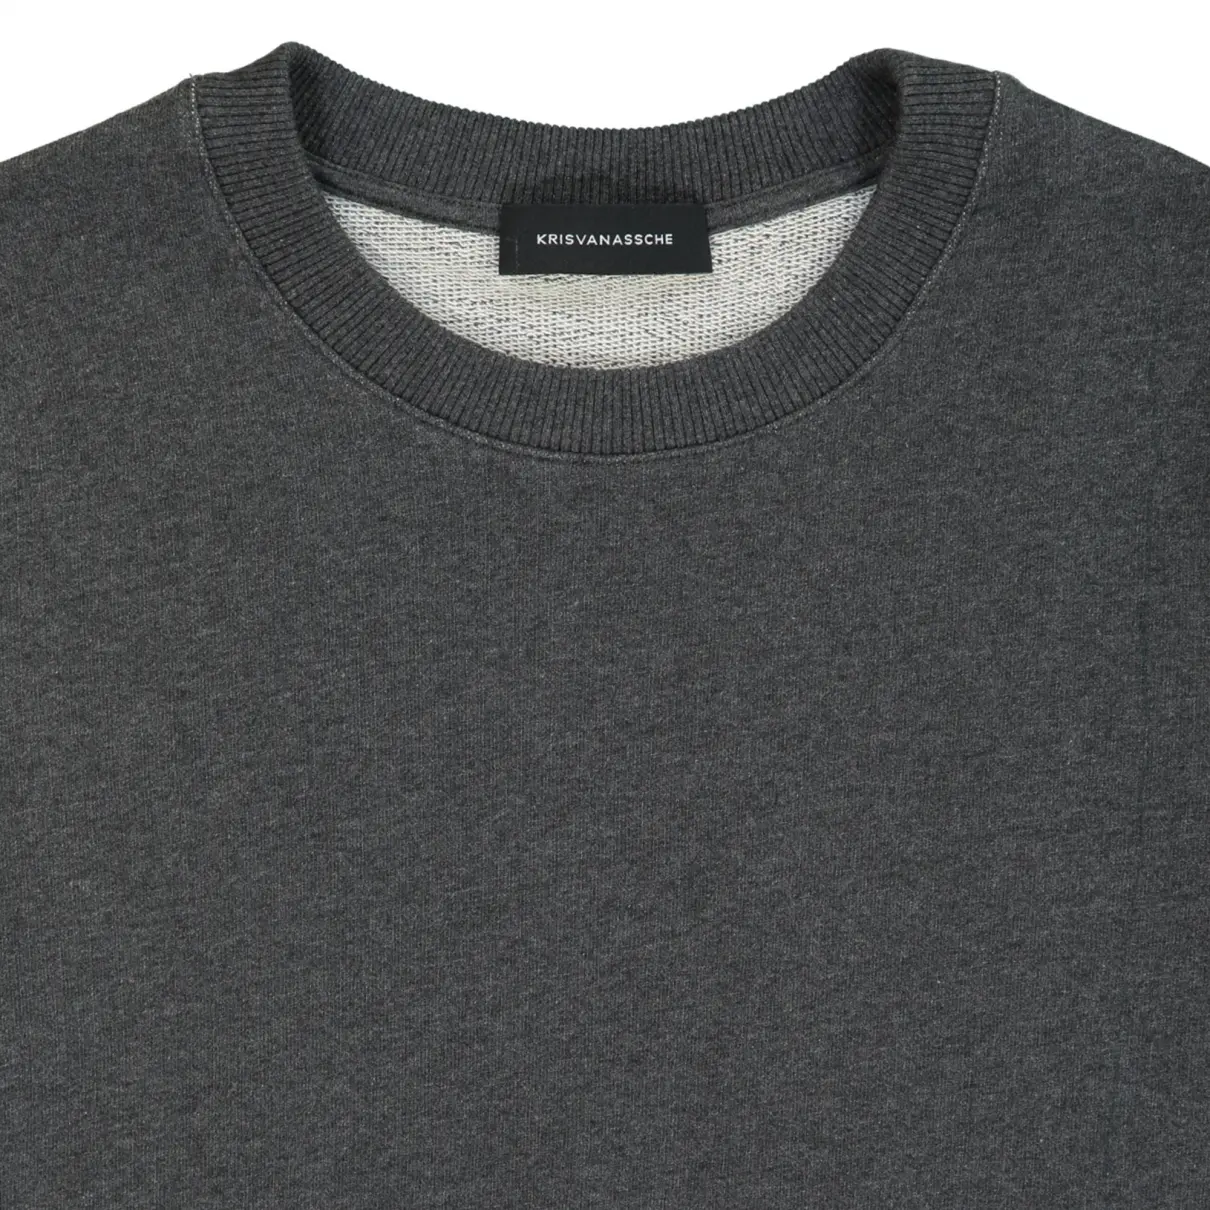 Buy Kris Van Assche T-shirt online